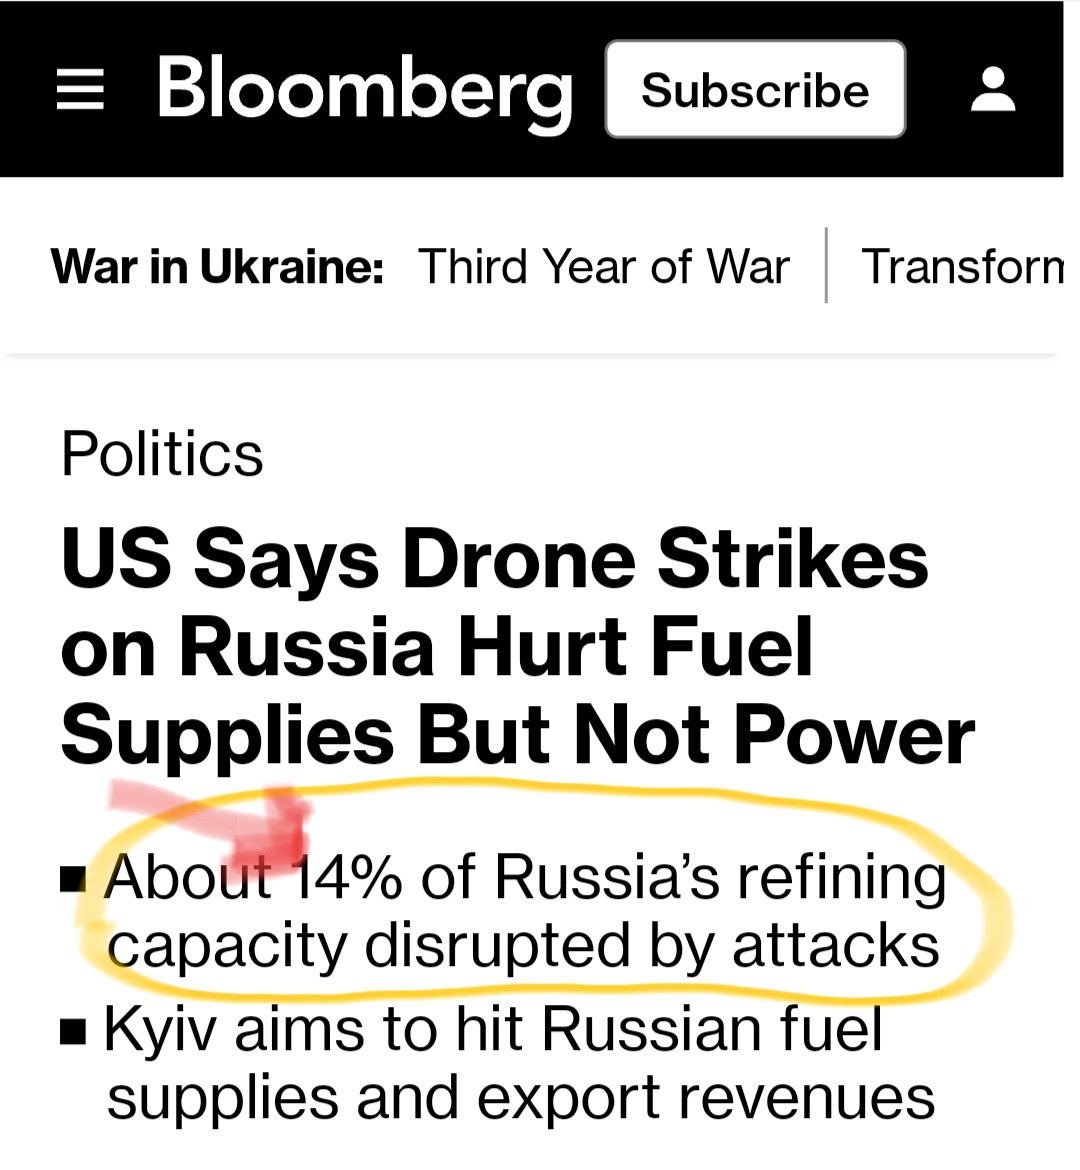 Lentamente ma inesorabilmente la Russia va in pezzi grazie anche alla capacità distruttiva dei droni ucraini che danneggiano le infrastrutture petrolifere. Il 14% in breve tempo può raddoppiare e mettere in ginocchio le esportazioni di prodotti raffinati😈